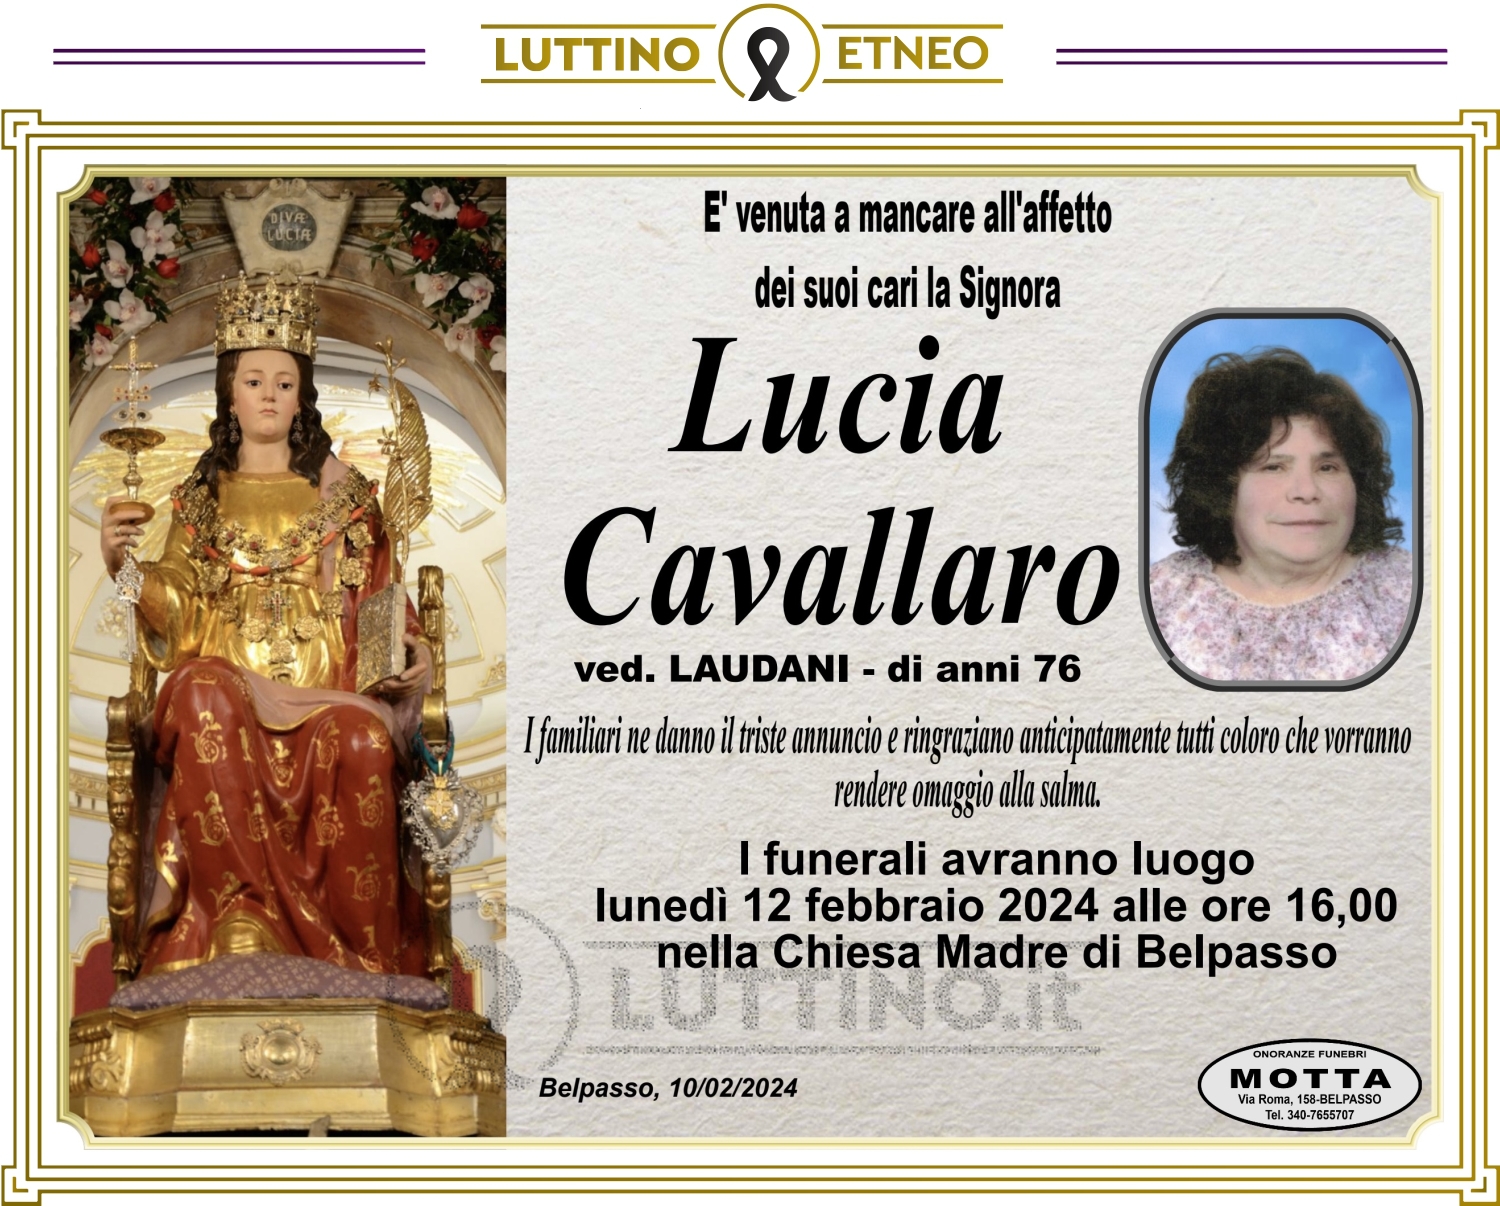 Lucia Cavallaro